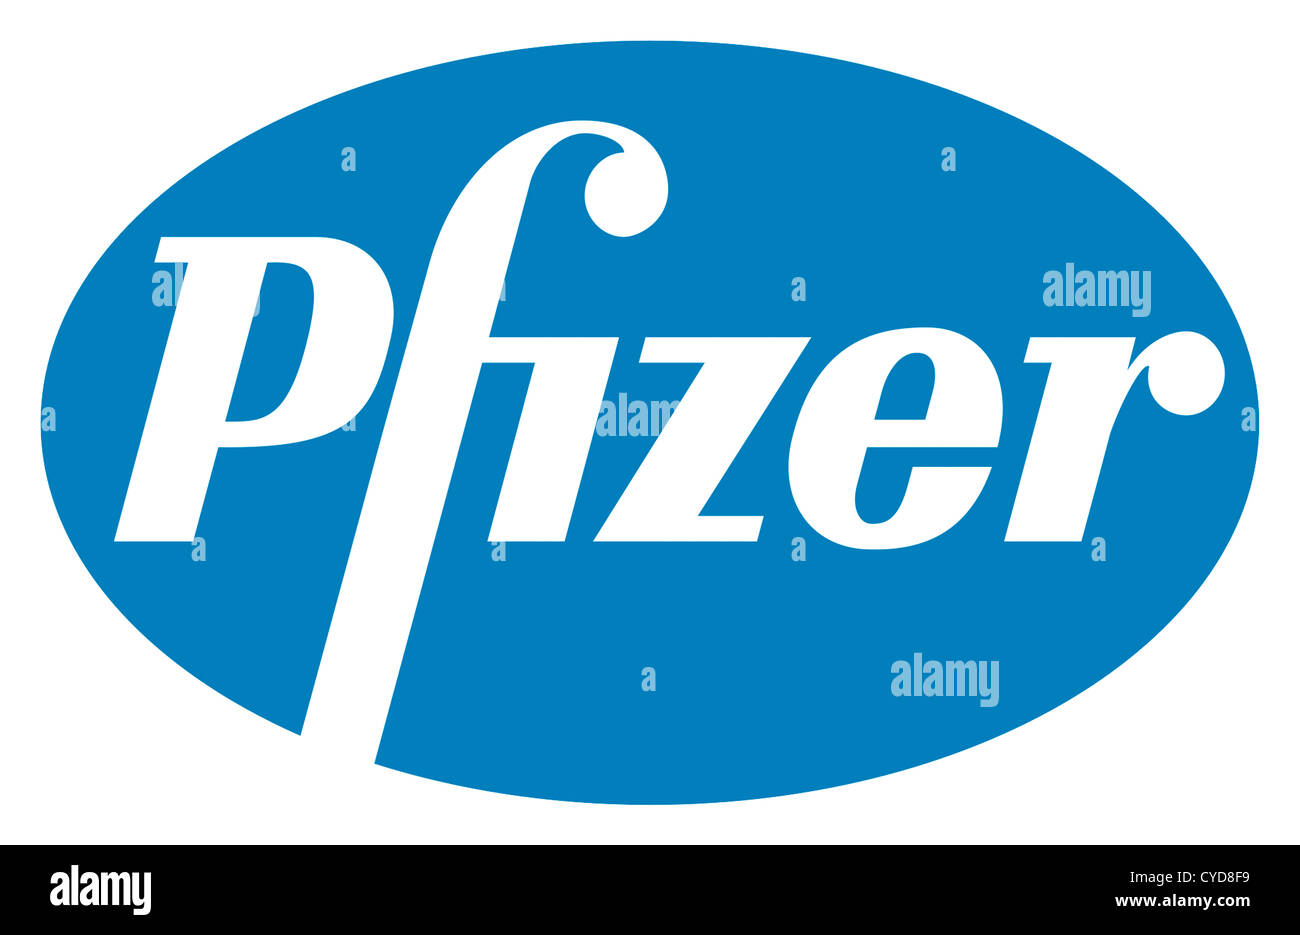 Logo della U.S. società farmaceutica Pfizer con sede a New York. Foto Stock